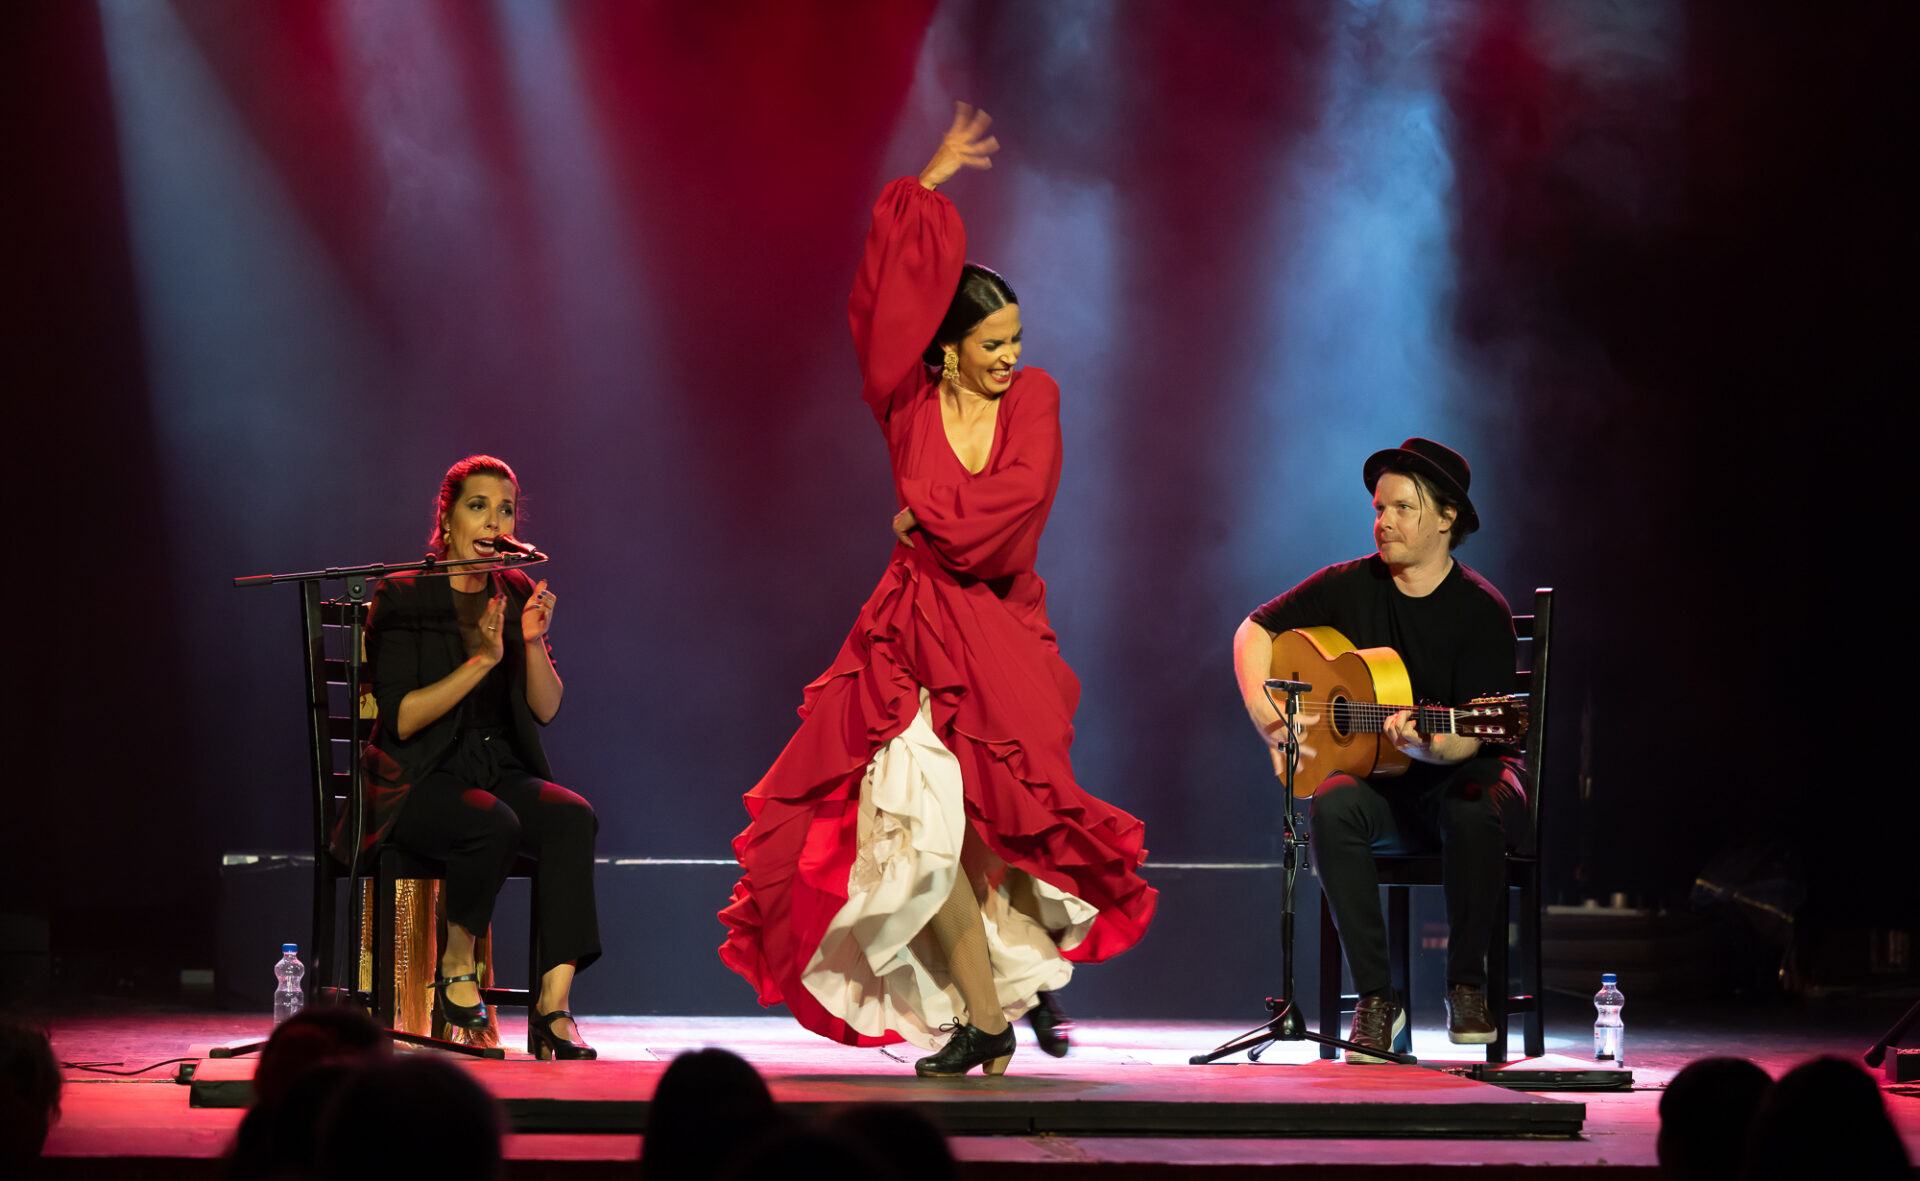 Brindamos Flamenco trio esiintymässä. Reunoilla kaksi istuvaa muusikkoa ja keskellä liikkeeseen eläytyvä tanssija punaisessa mekossa.